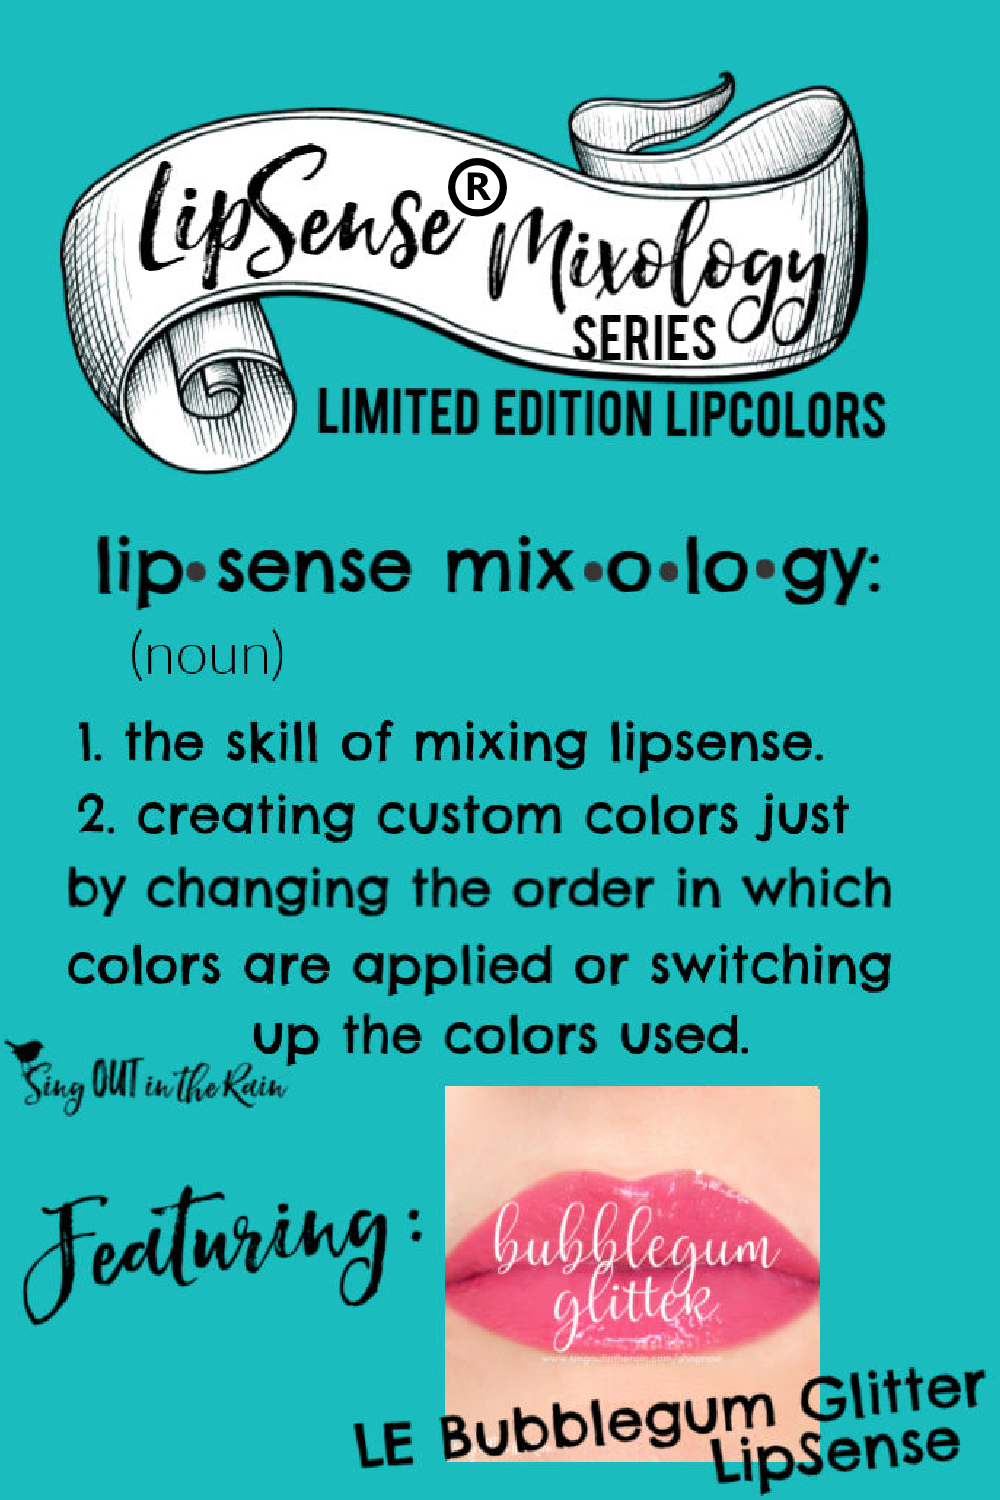 The Ultimate Guide to Bubblegum Glitter LipSense Mixology